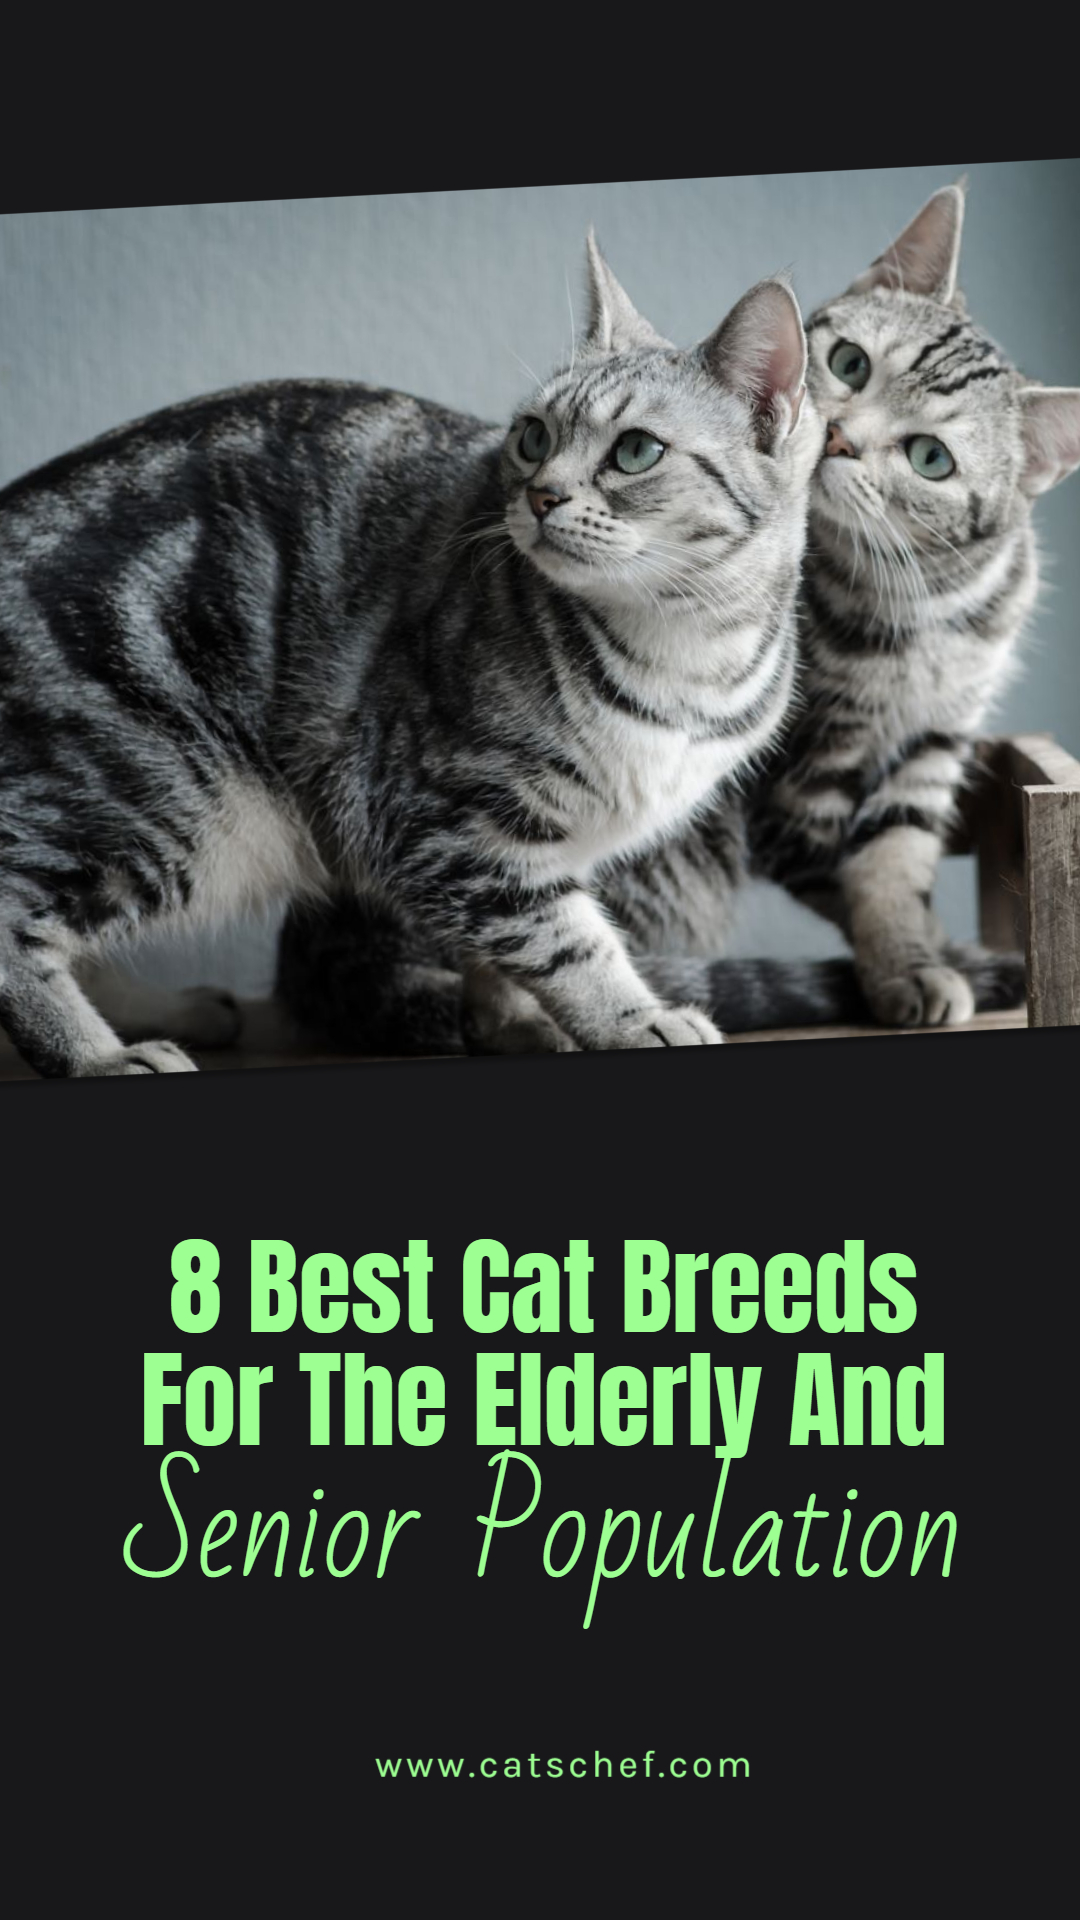 8 Yaşlılar ve Yaşlı Nüfus İçin En İyi Kedi Irkları